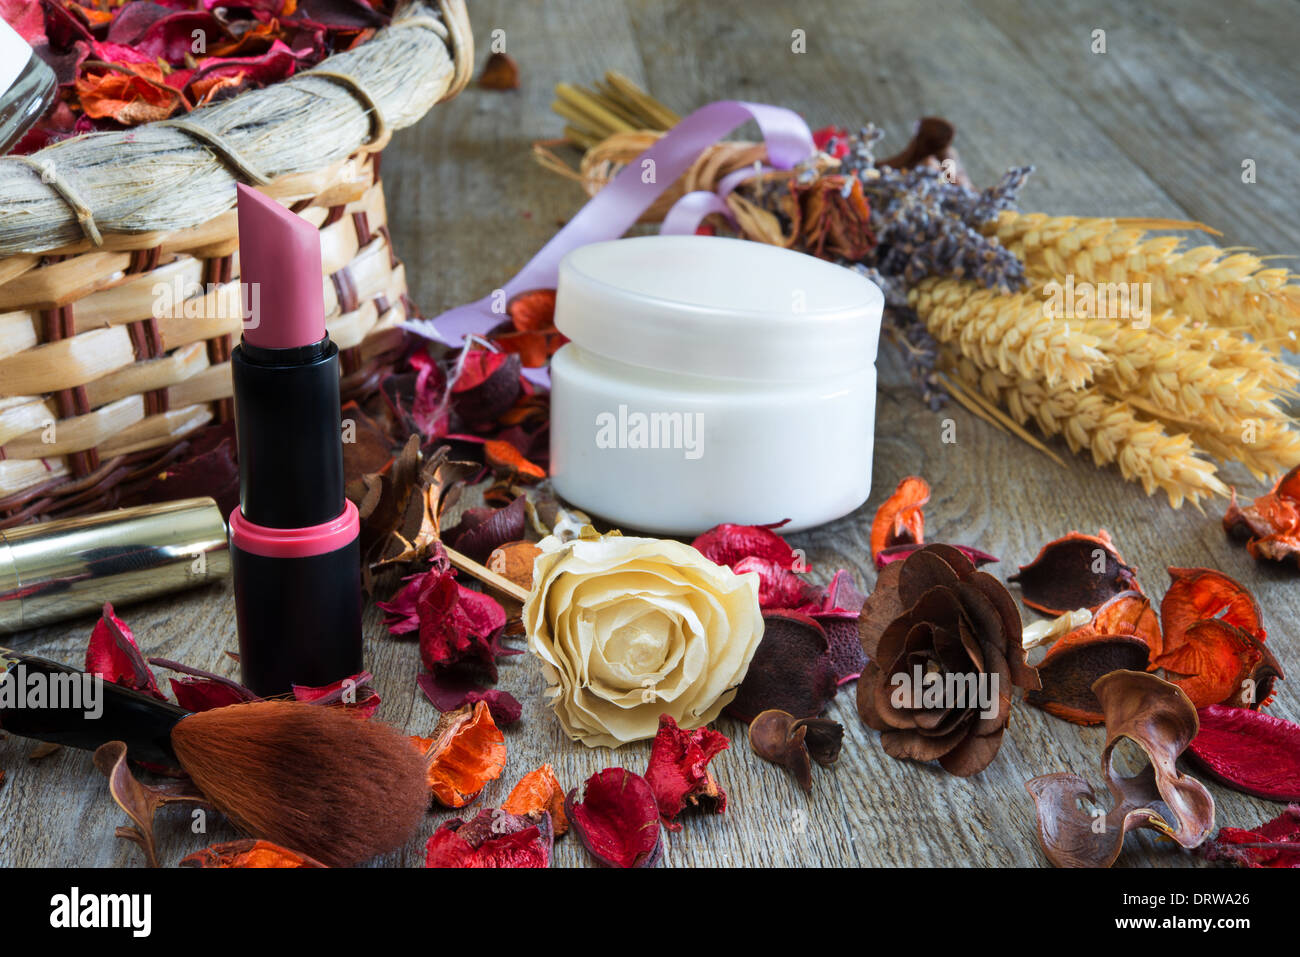 Holztisch mit Artikeln für Make-up und duftenden Blüten getrocknet Stockfoto